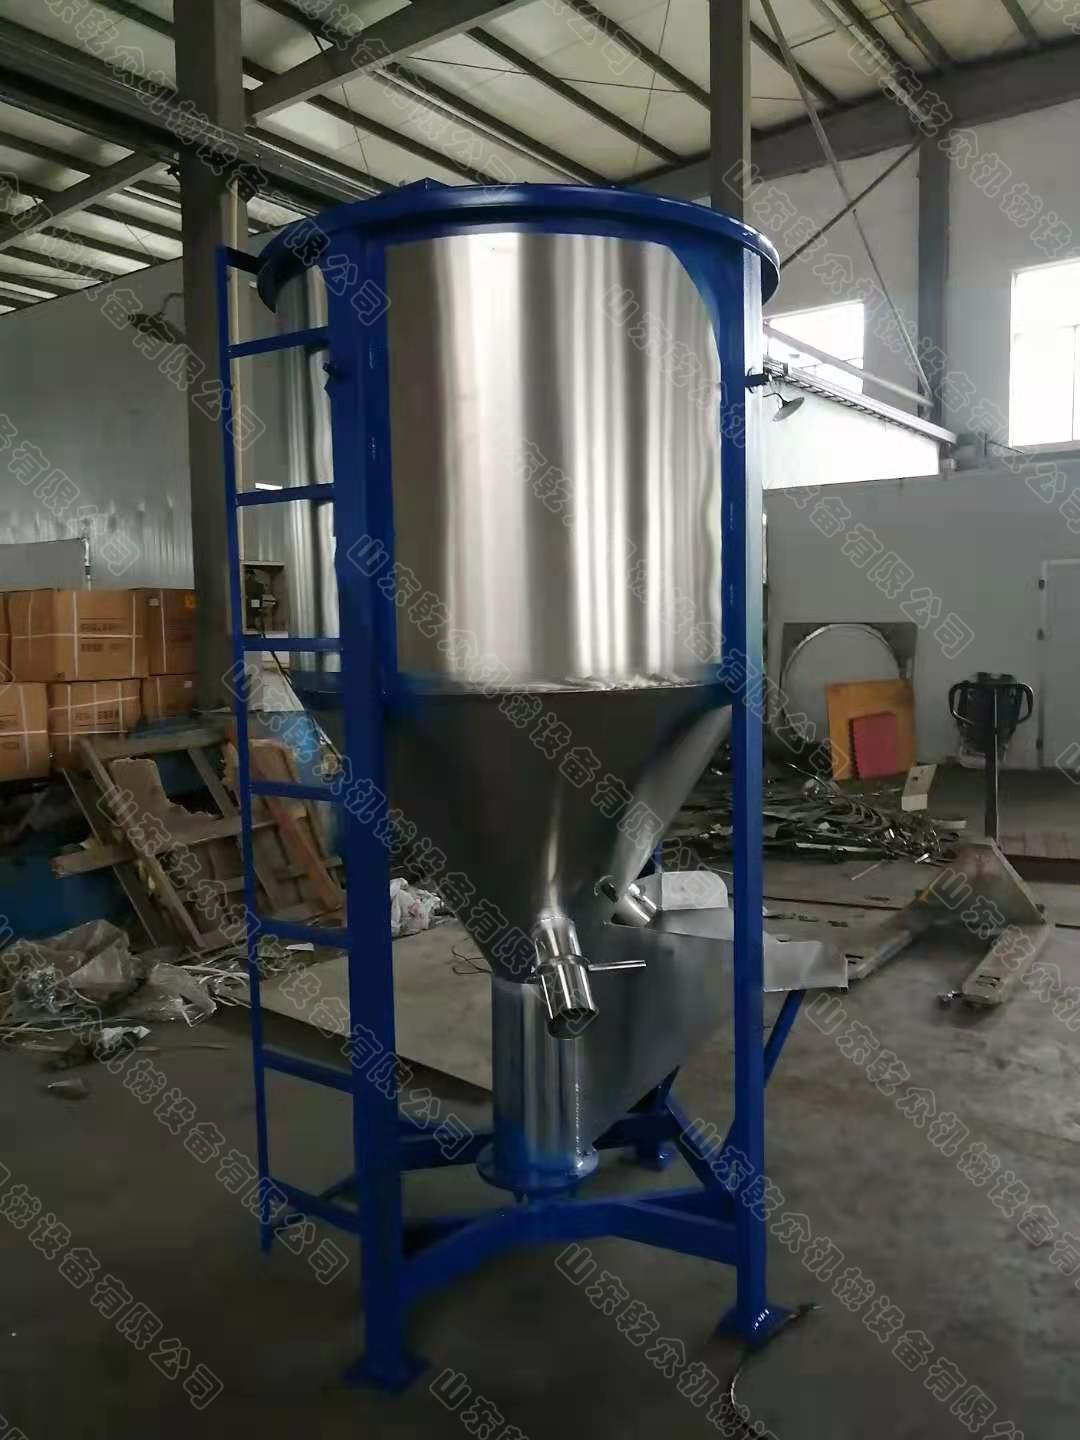 500公斤塑料不锈钢立式搅拌机厂家批发